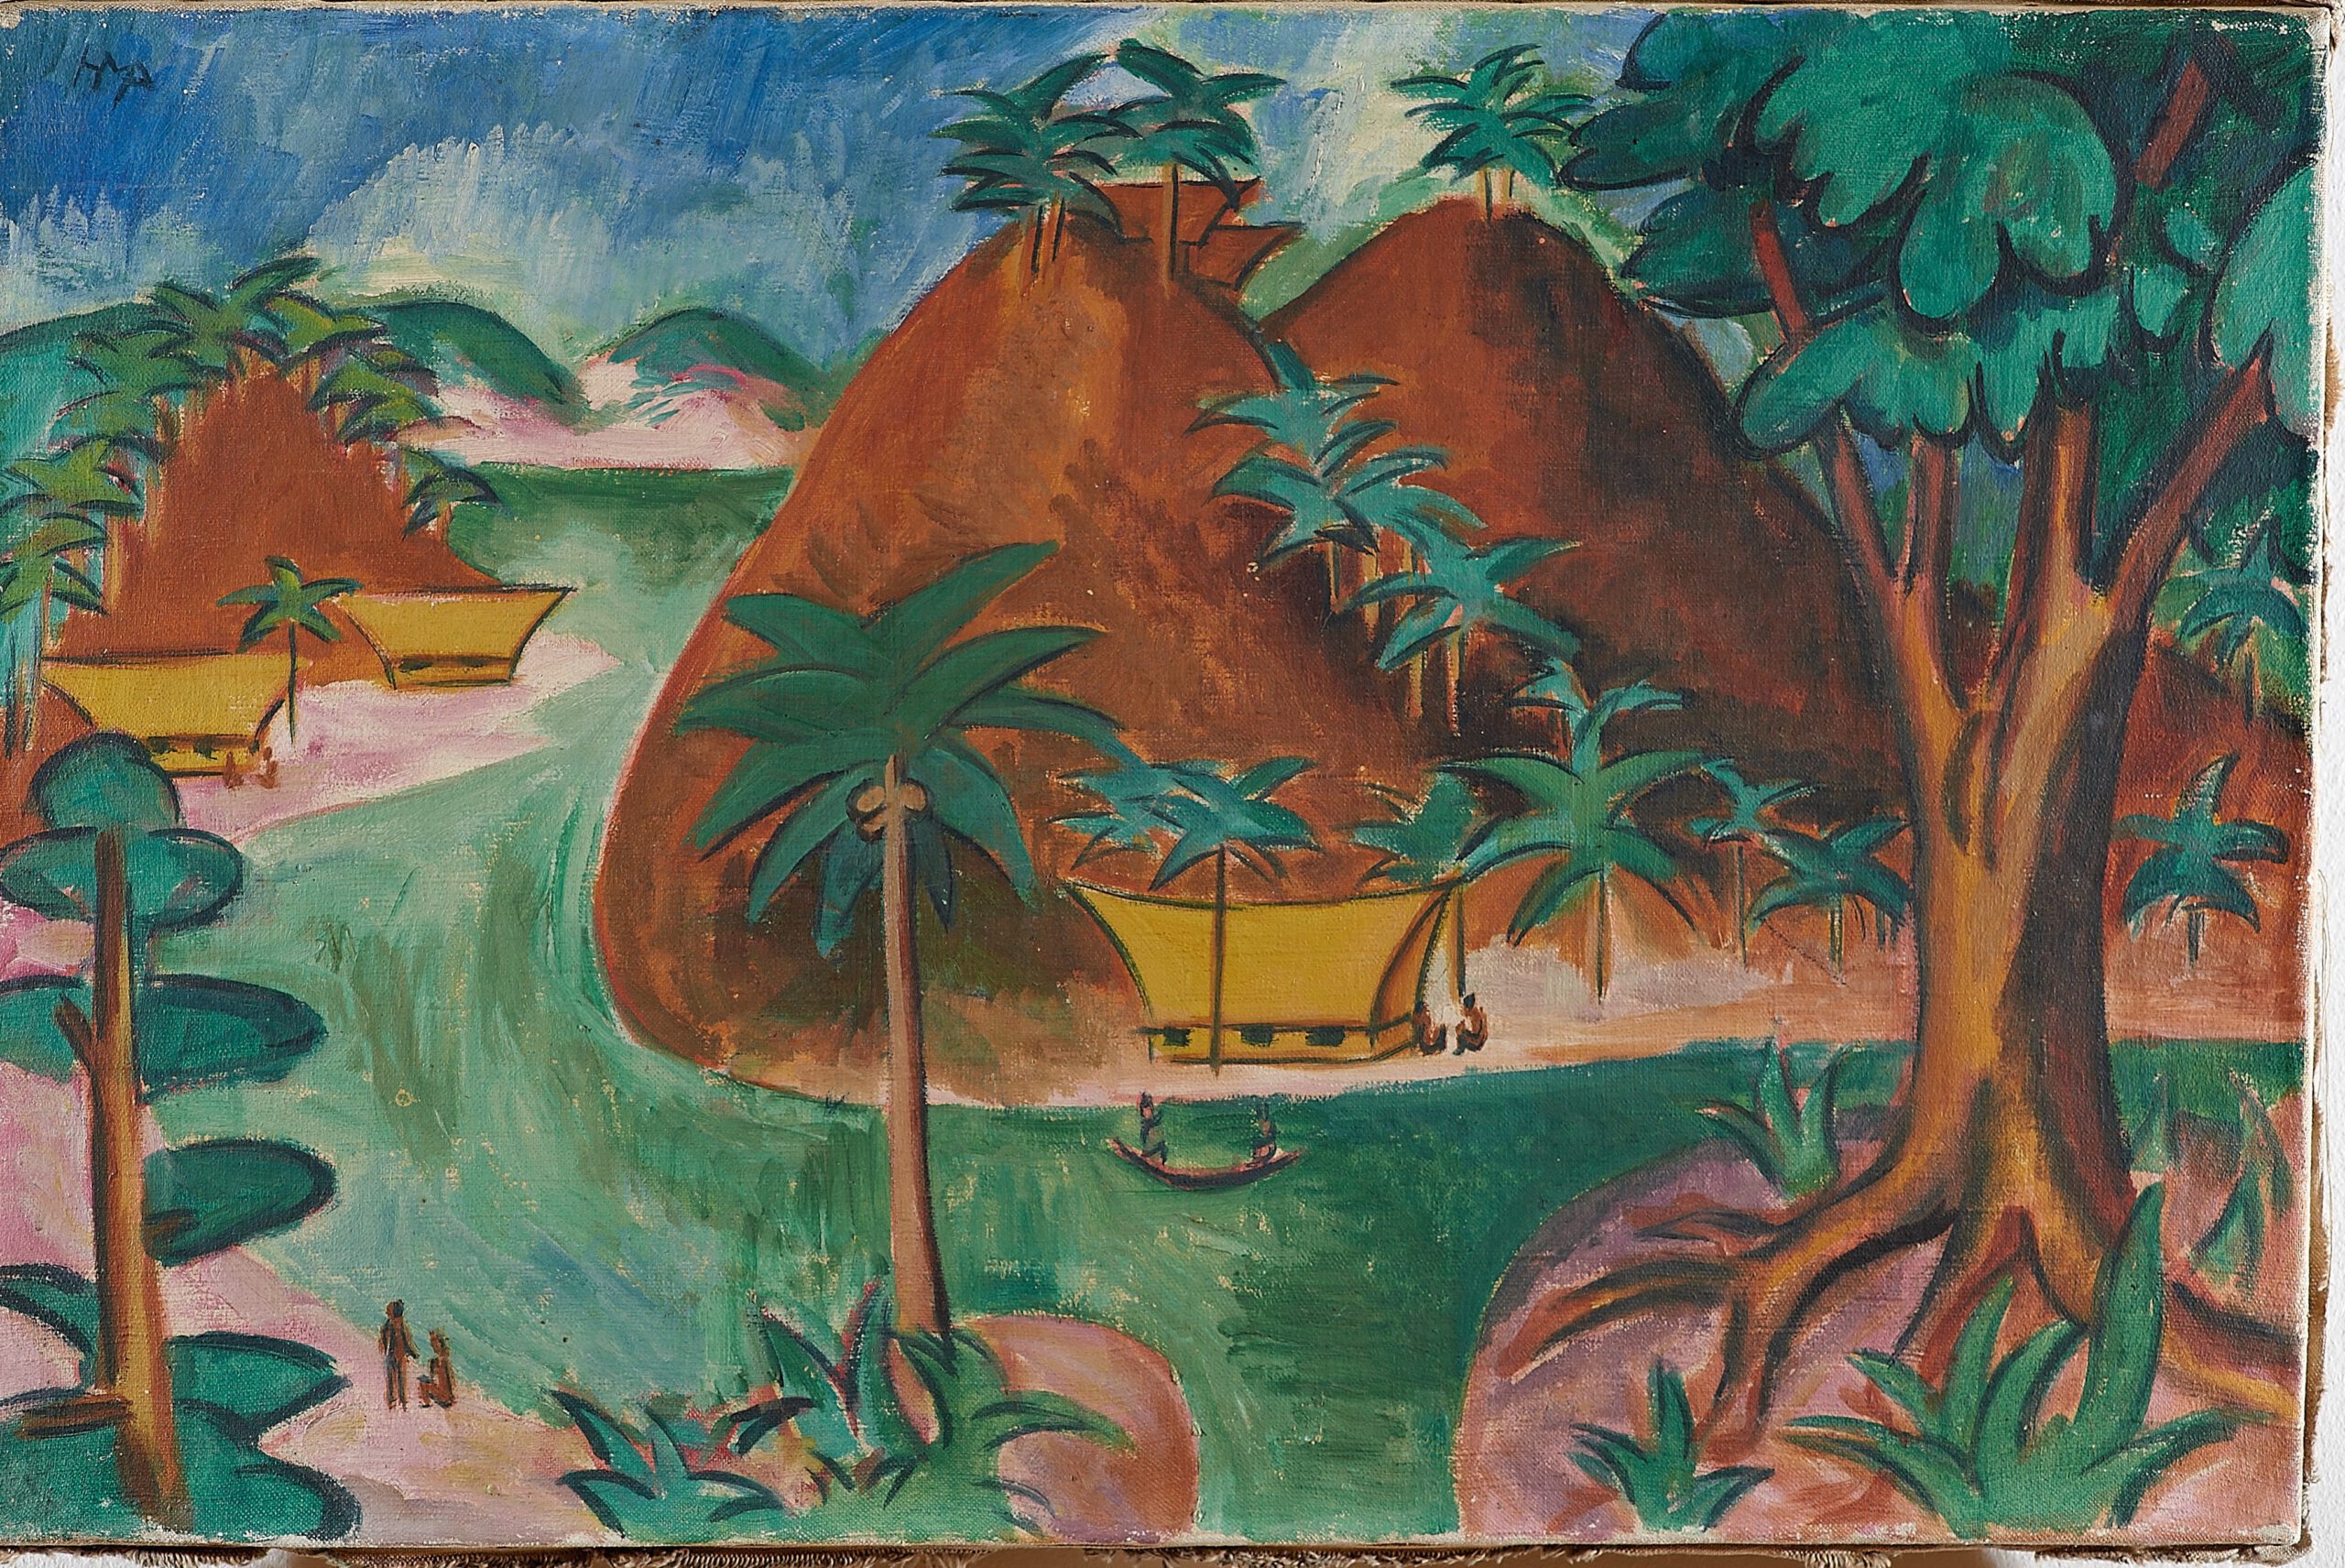 Foto des Gemäldes von Max Pechstein, Chogealls (Palau), 1917, Öl auf Leinwand